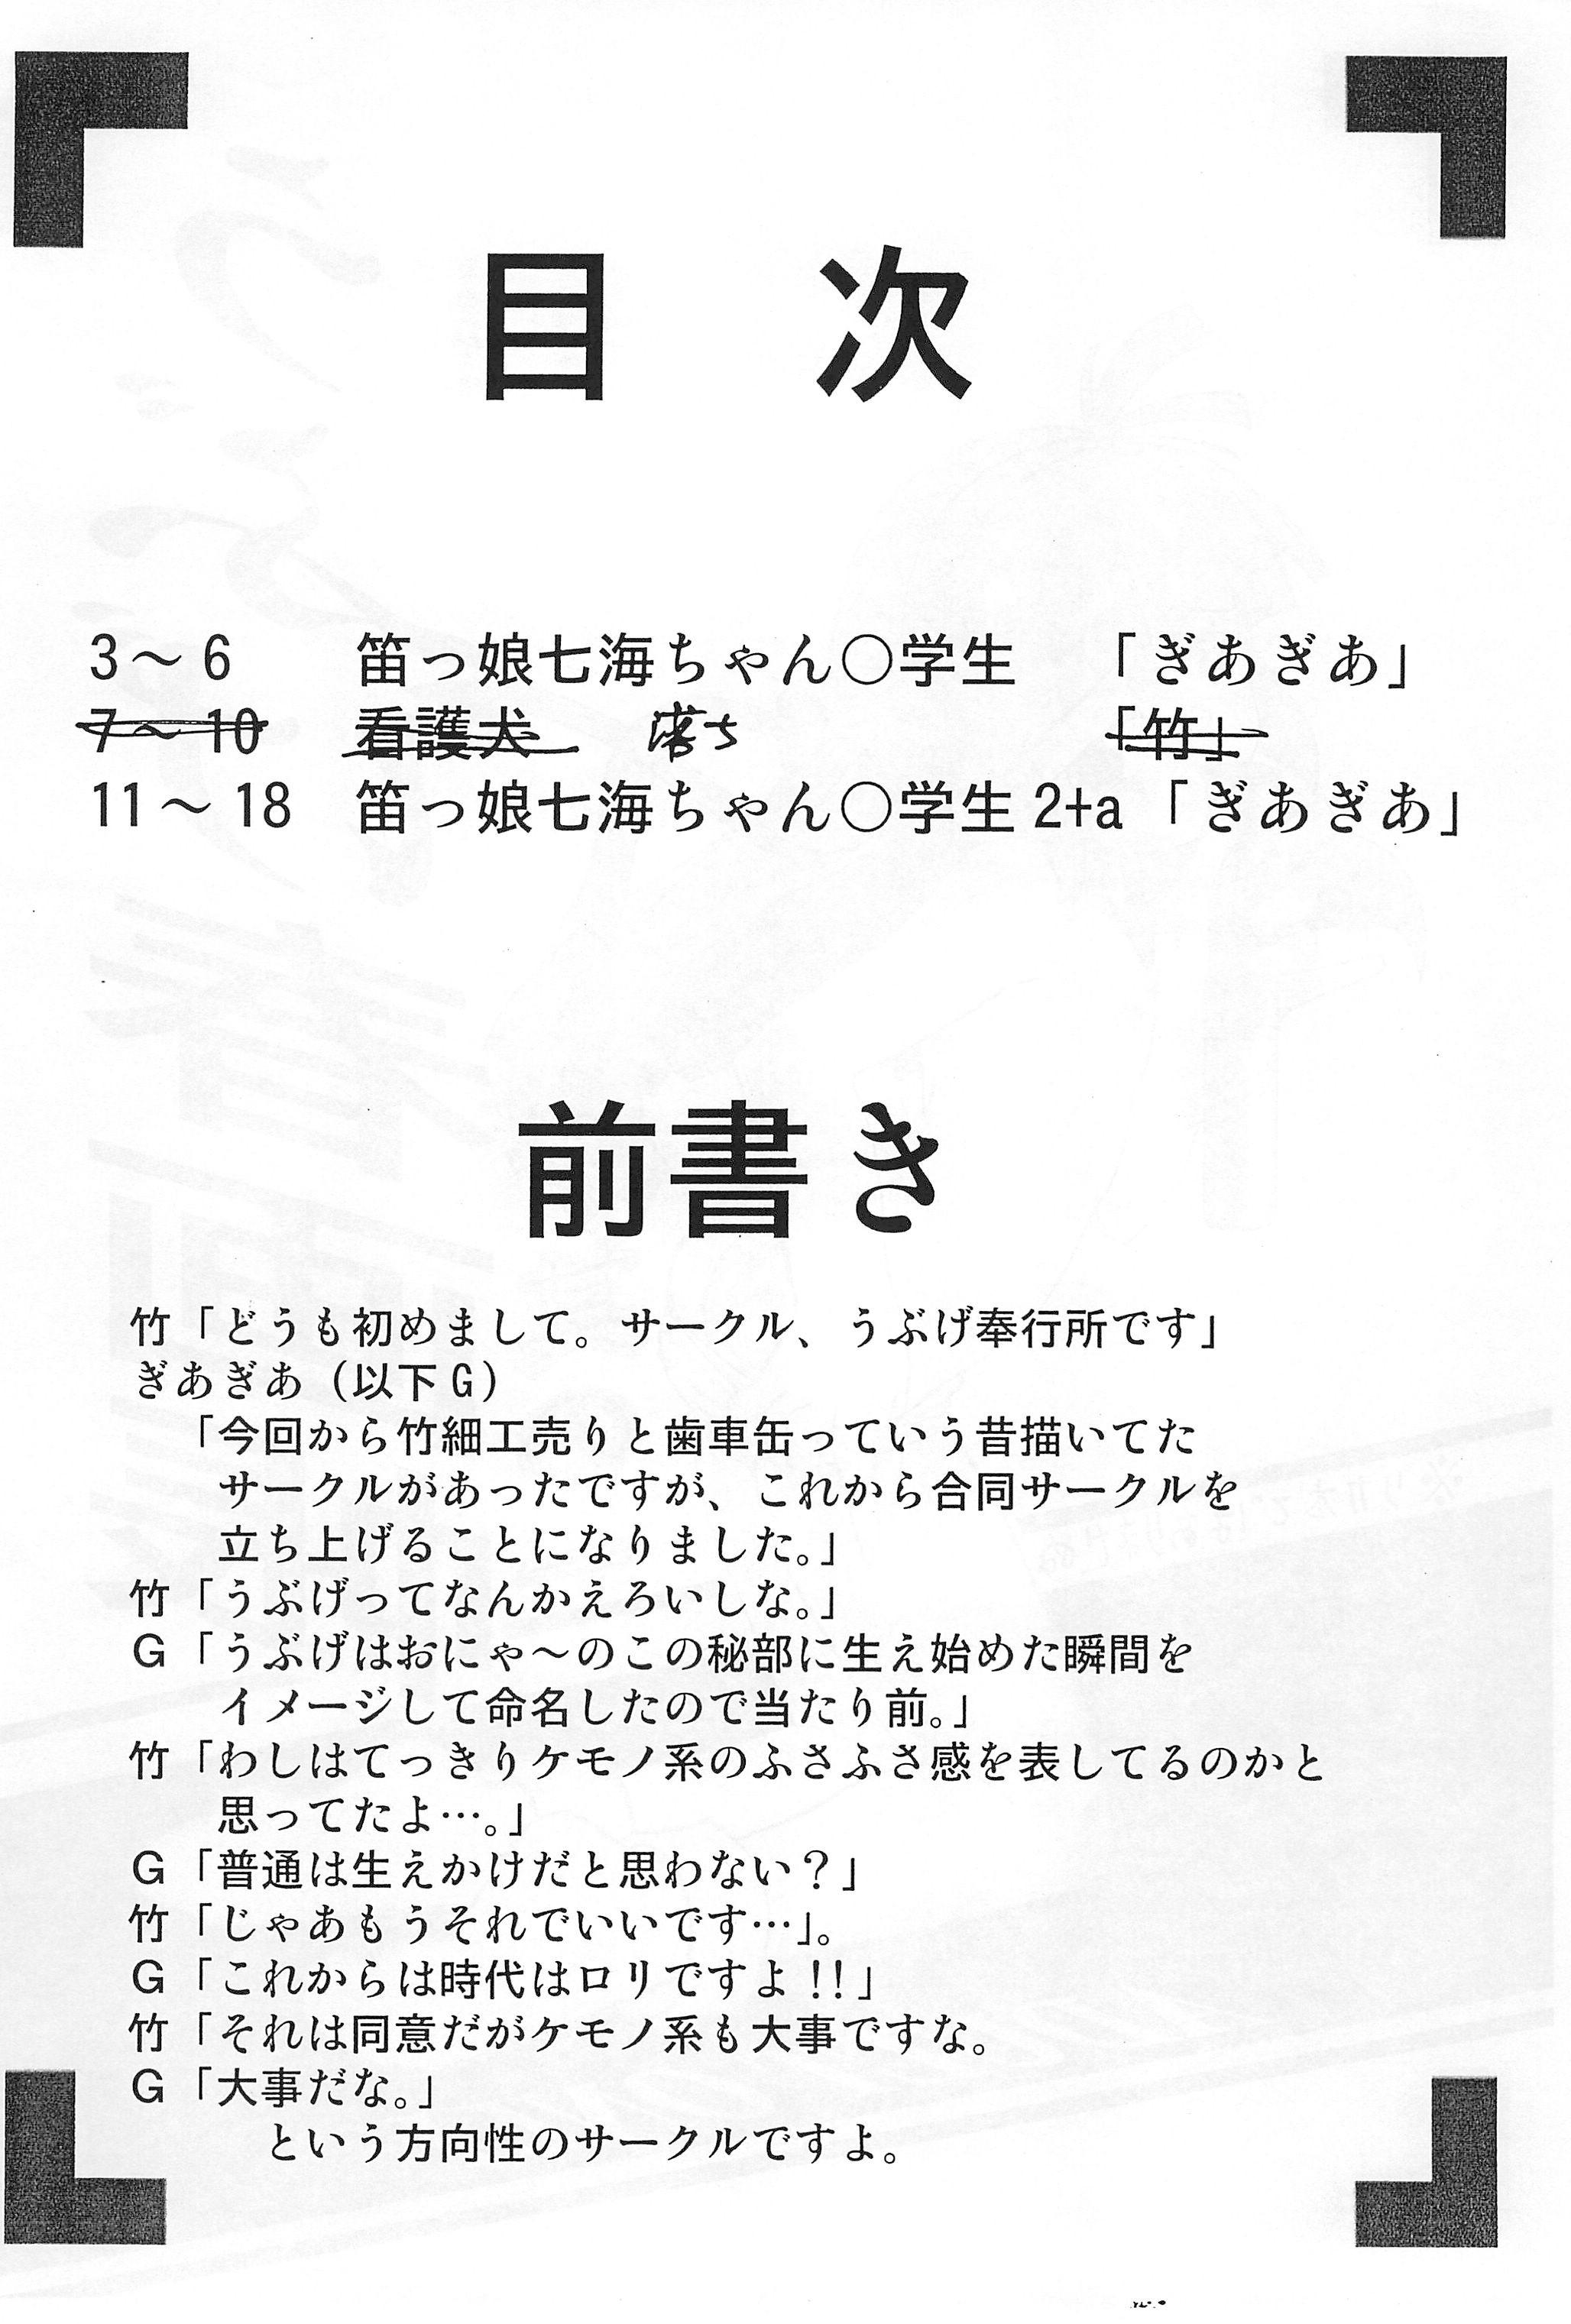 Travesti Ubuge Haru Gachou Sono Ichi Semen - Page 4